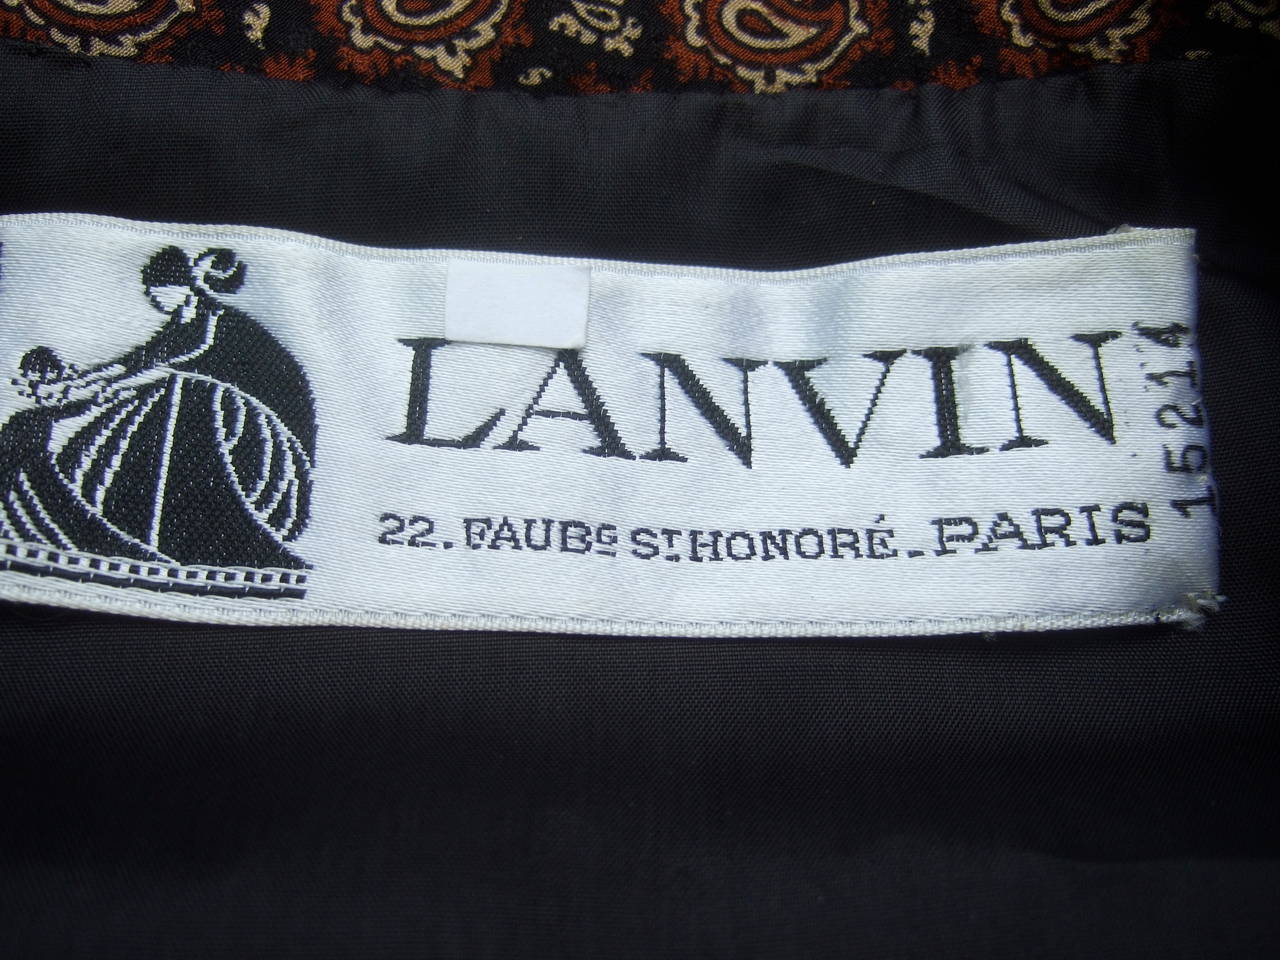 Lanvin Couture Paris Wool Jacket & Paisley Blouse Ensemble c 1980s 3